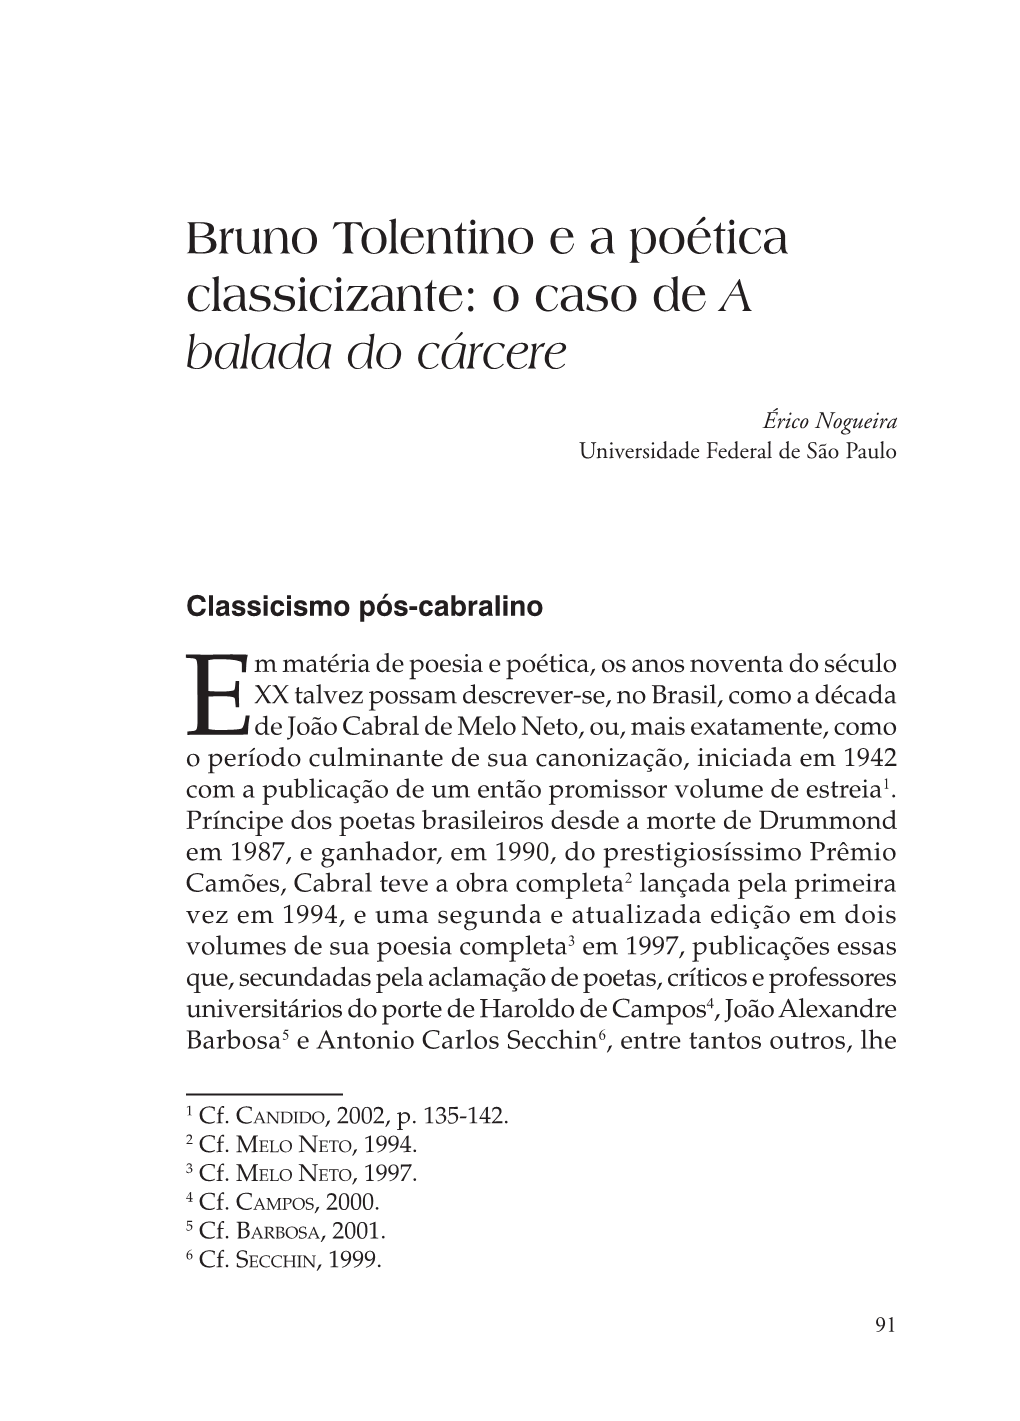 Bruno Tolentino E a Poética Classicizante: O Caso De a Balada Do Cárcere